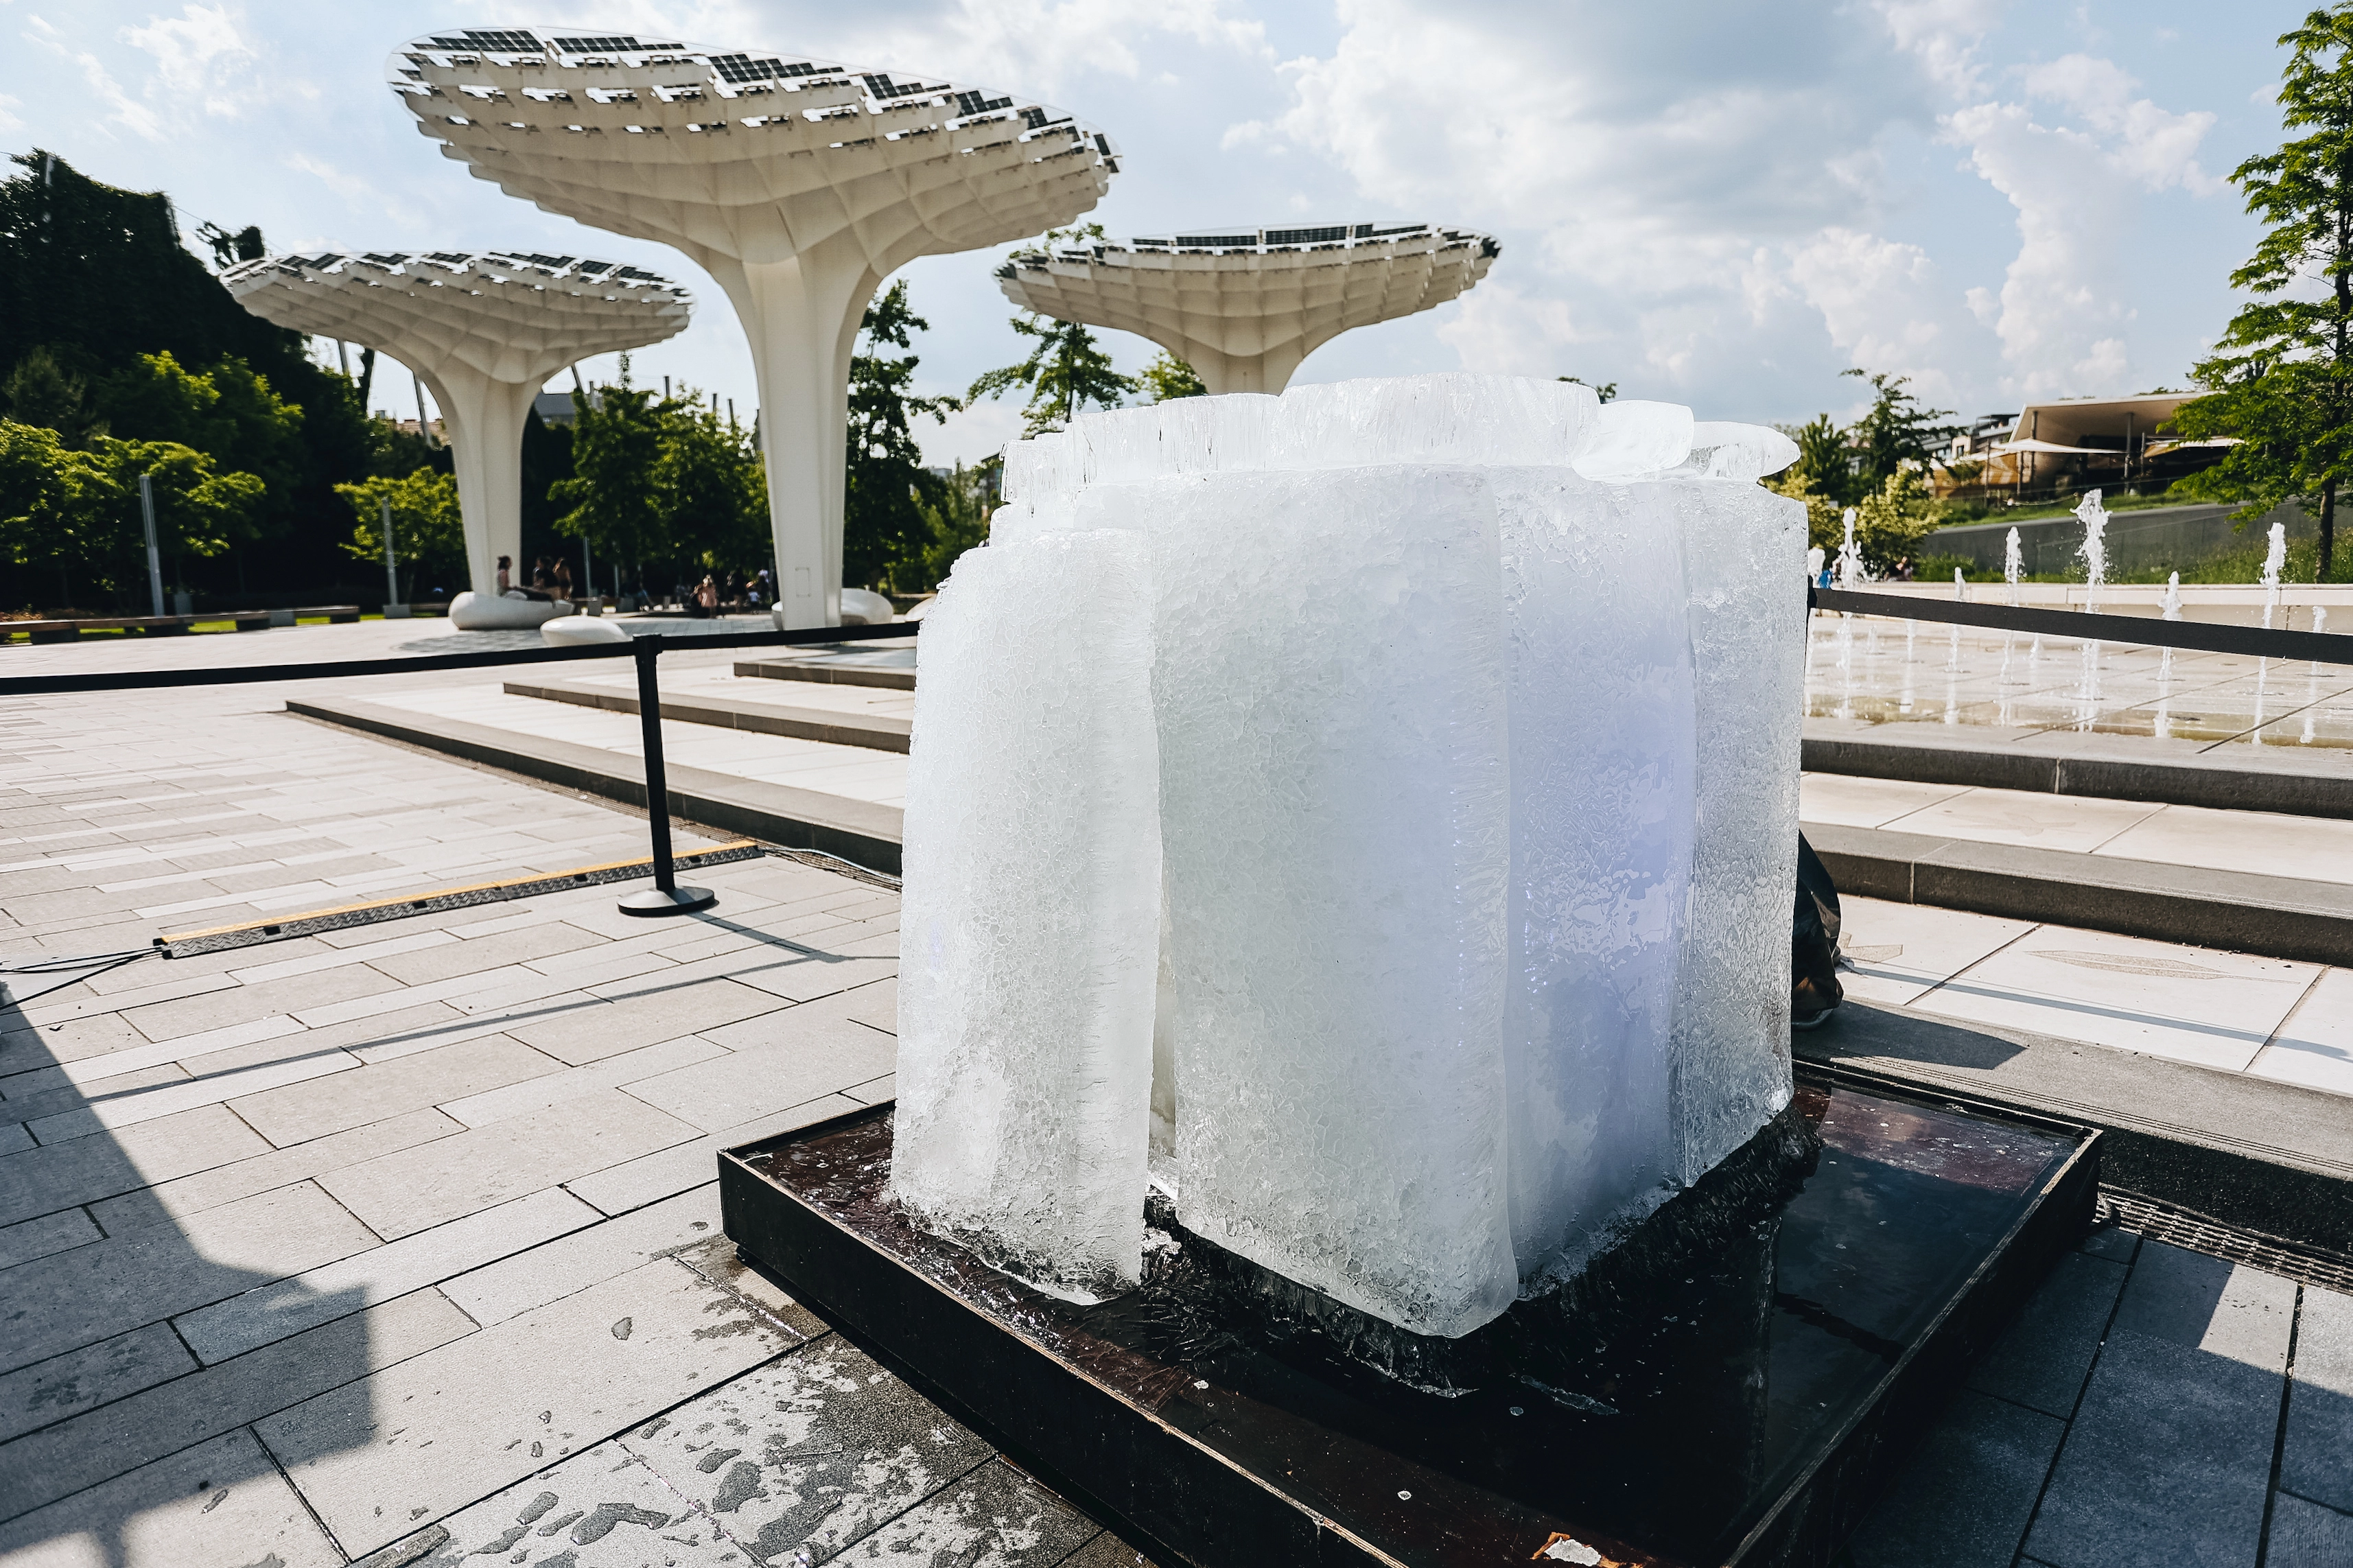 Óriási, rejtélyes jégtömb bukkant fel a Millenáris Széllkapu Parkban